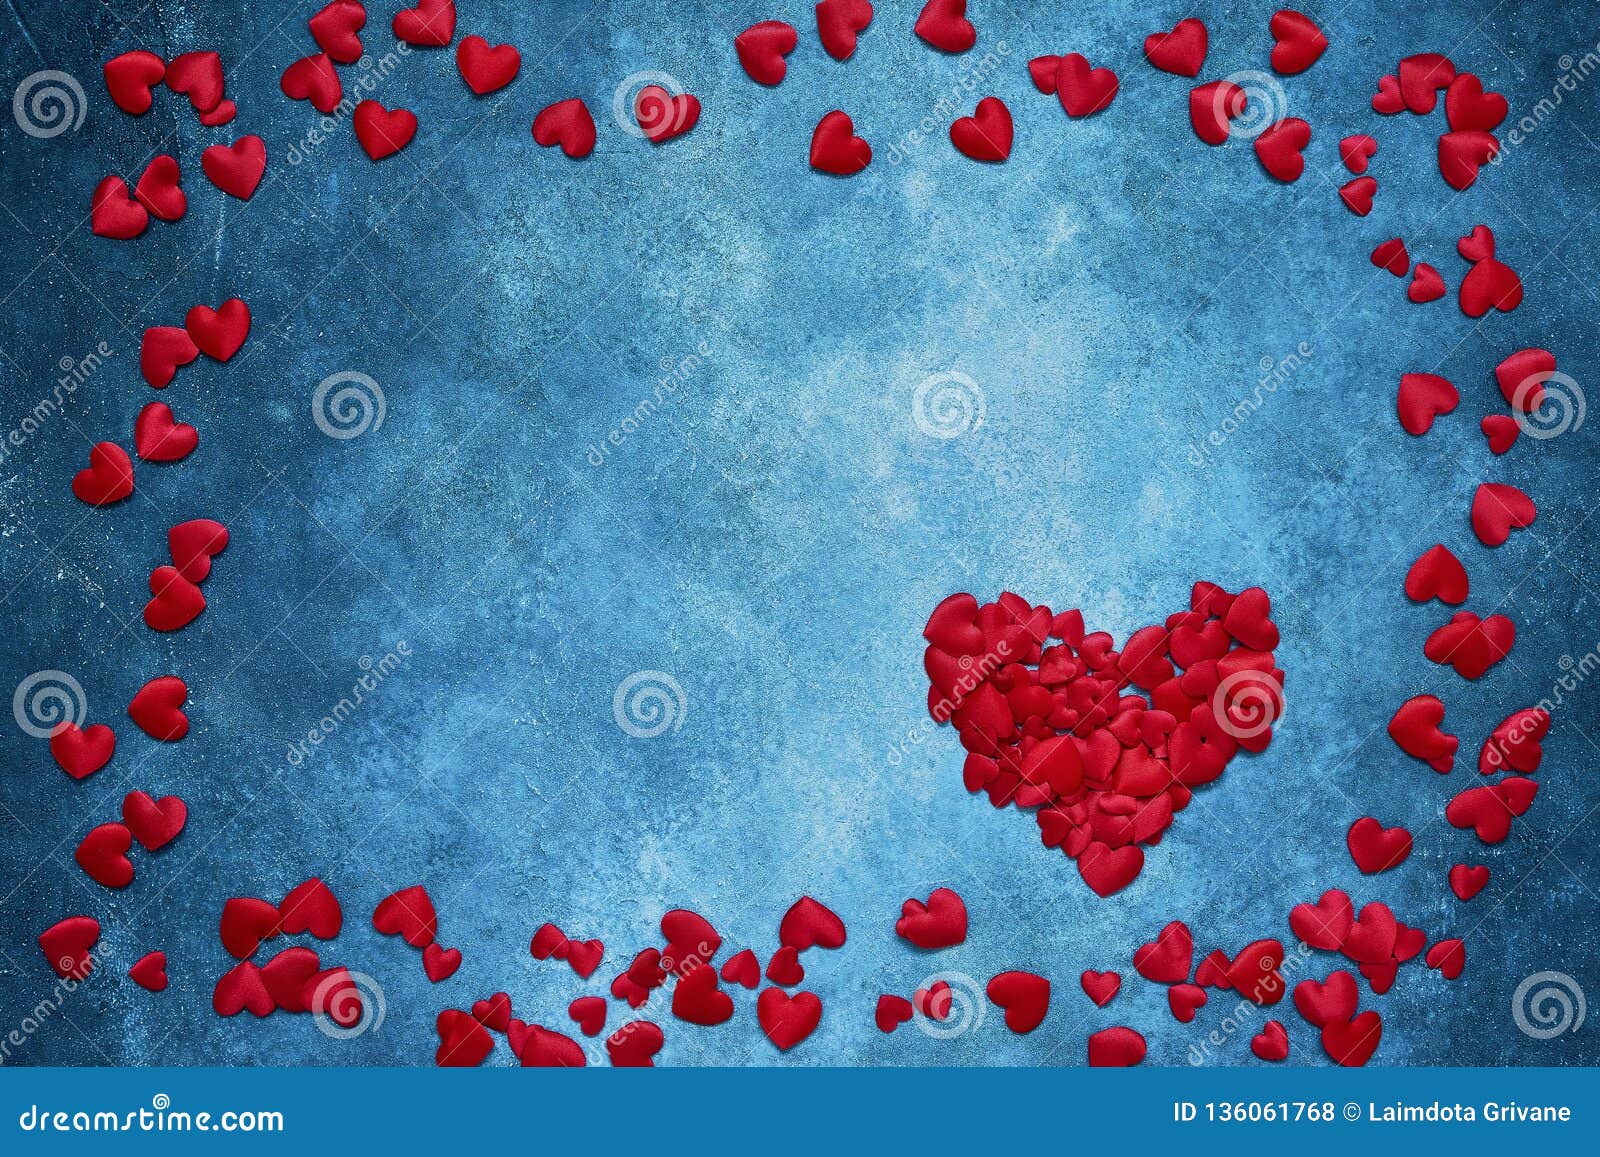 Khung trái tim đỏ trên nền màu xanh Valentine sẽ mang đến một điểm nhấn đặc biệt cho bức ảnh. Sự xen kẽ giữa màu đỏ và màu xanh tạo ra một sự cân bằng tuyệt đẹp mà ai cũng sẽ yêu thích. Hãy ngắm nhìn hình ảnh để trải nghiệm điều đó.